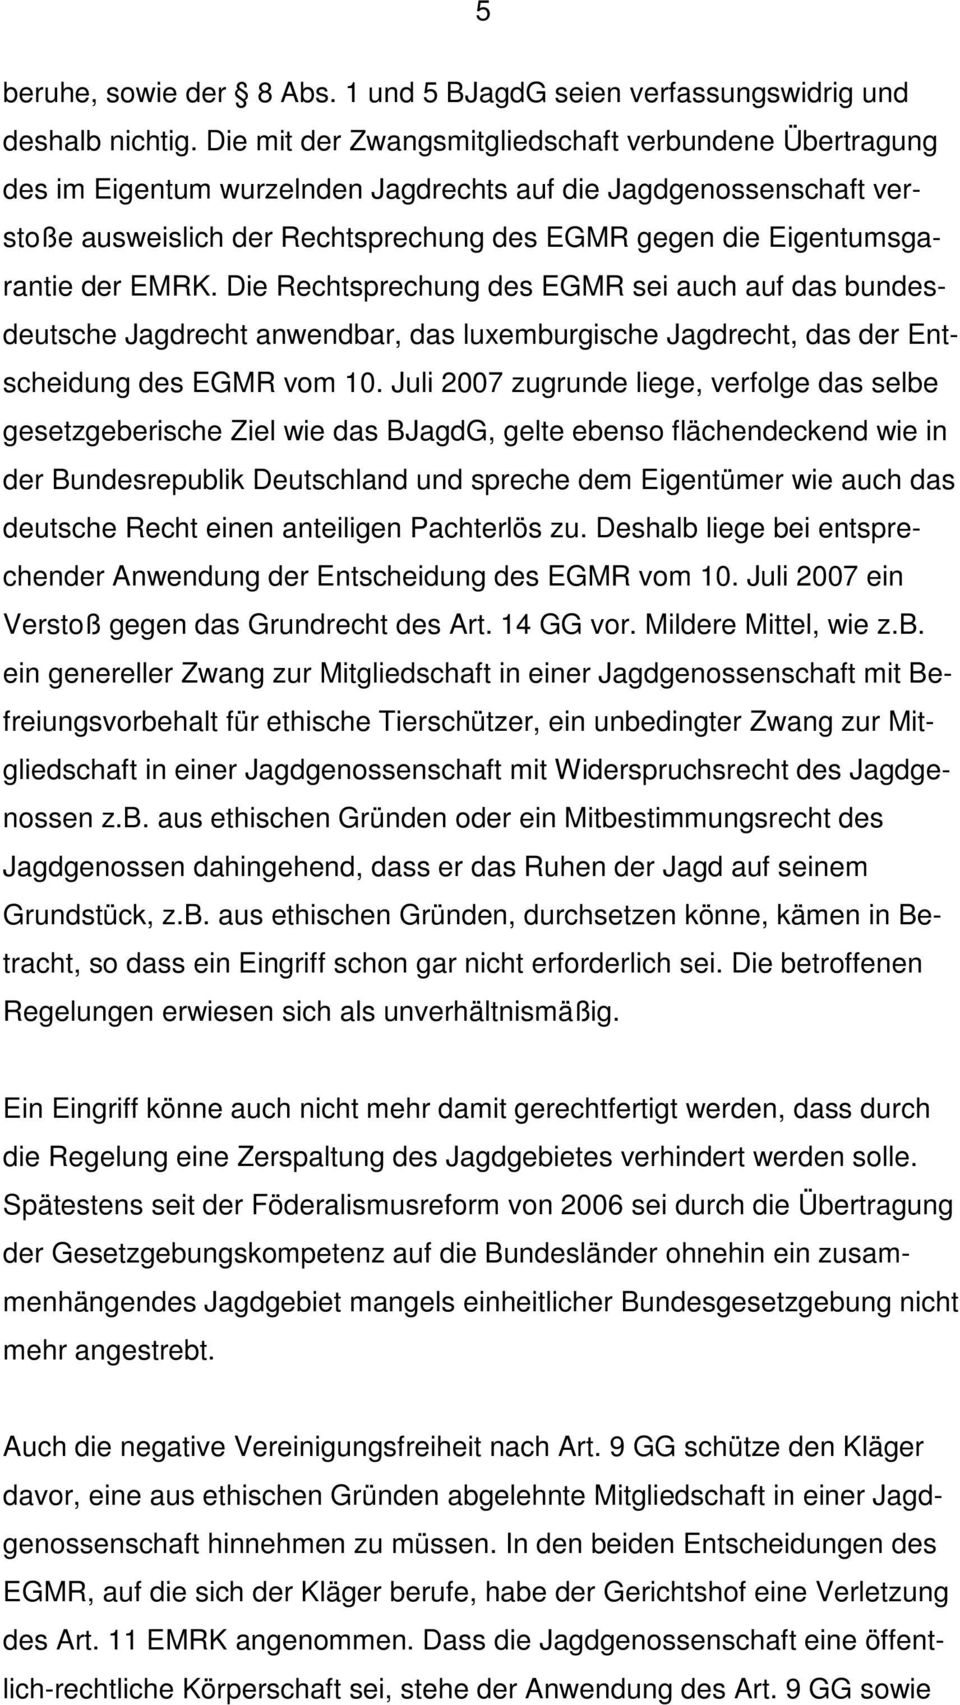 der EMRK. Die Rechtsprechung des EGMR sei auch auf das bundesdeutsche Jagdrecht anwendbar, das luxemburgische Jagdrecht, das der Entscheidung des EGMR vom 10.